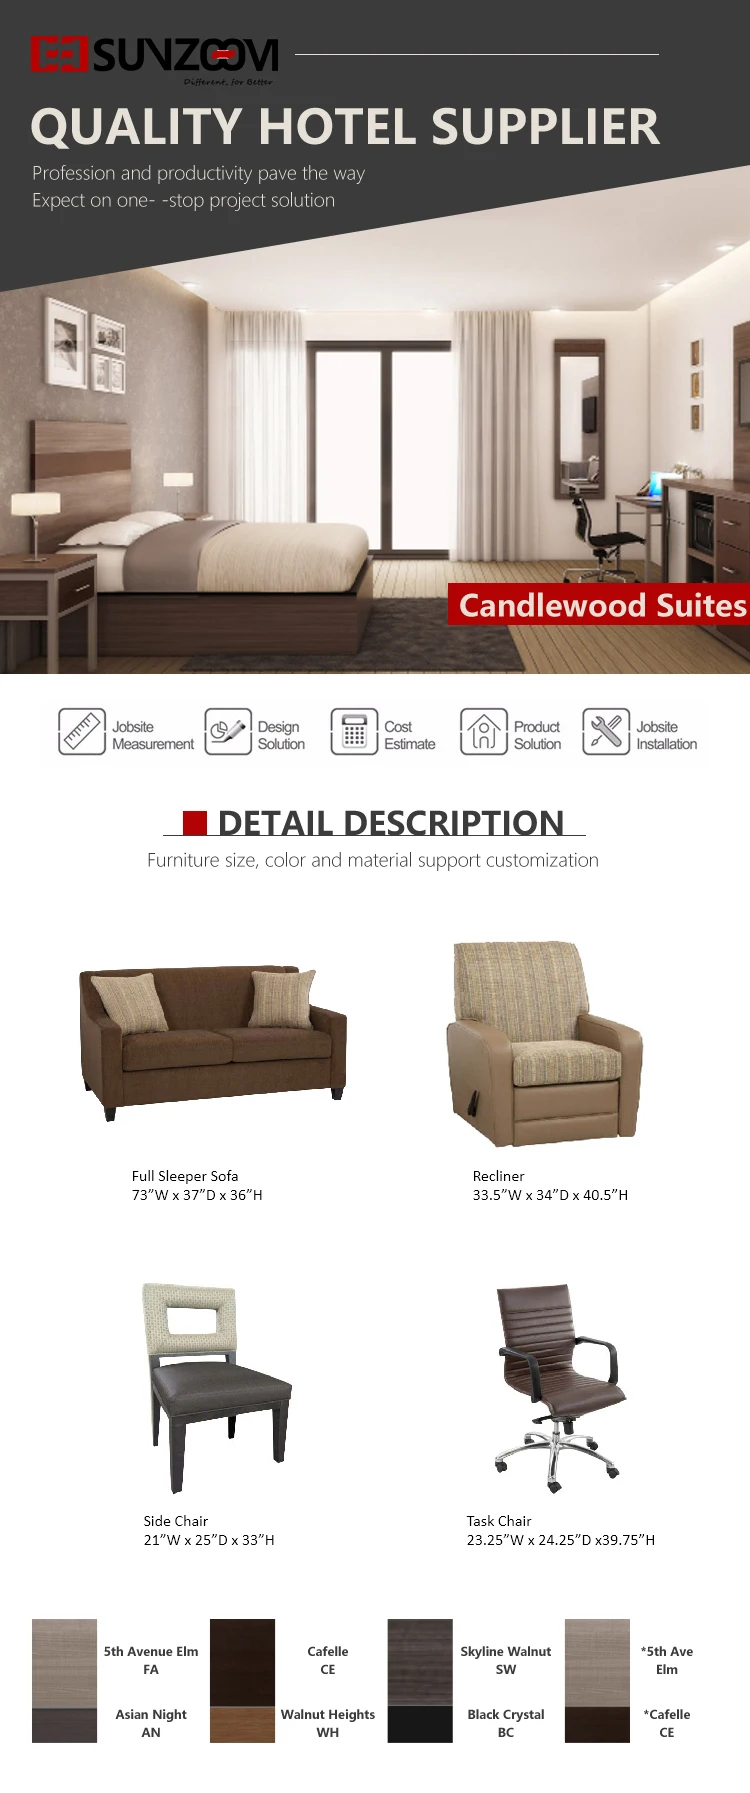 Modern candlewood suites hotel guest room furniture bed sofa set